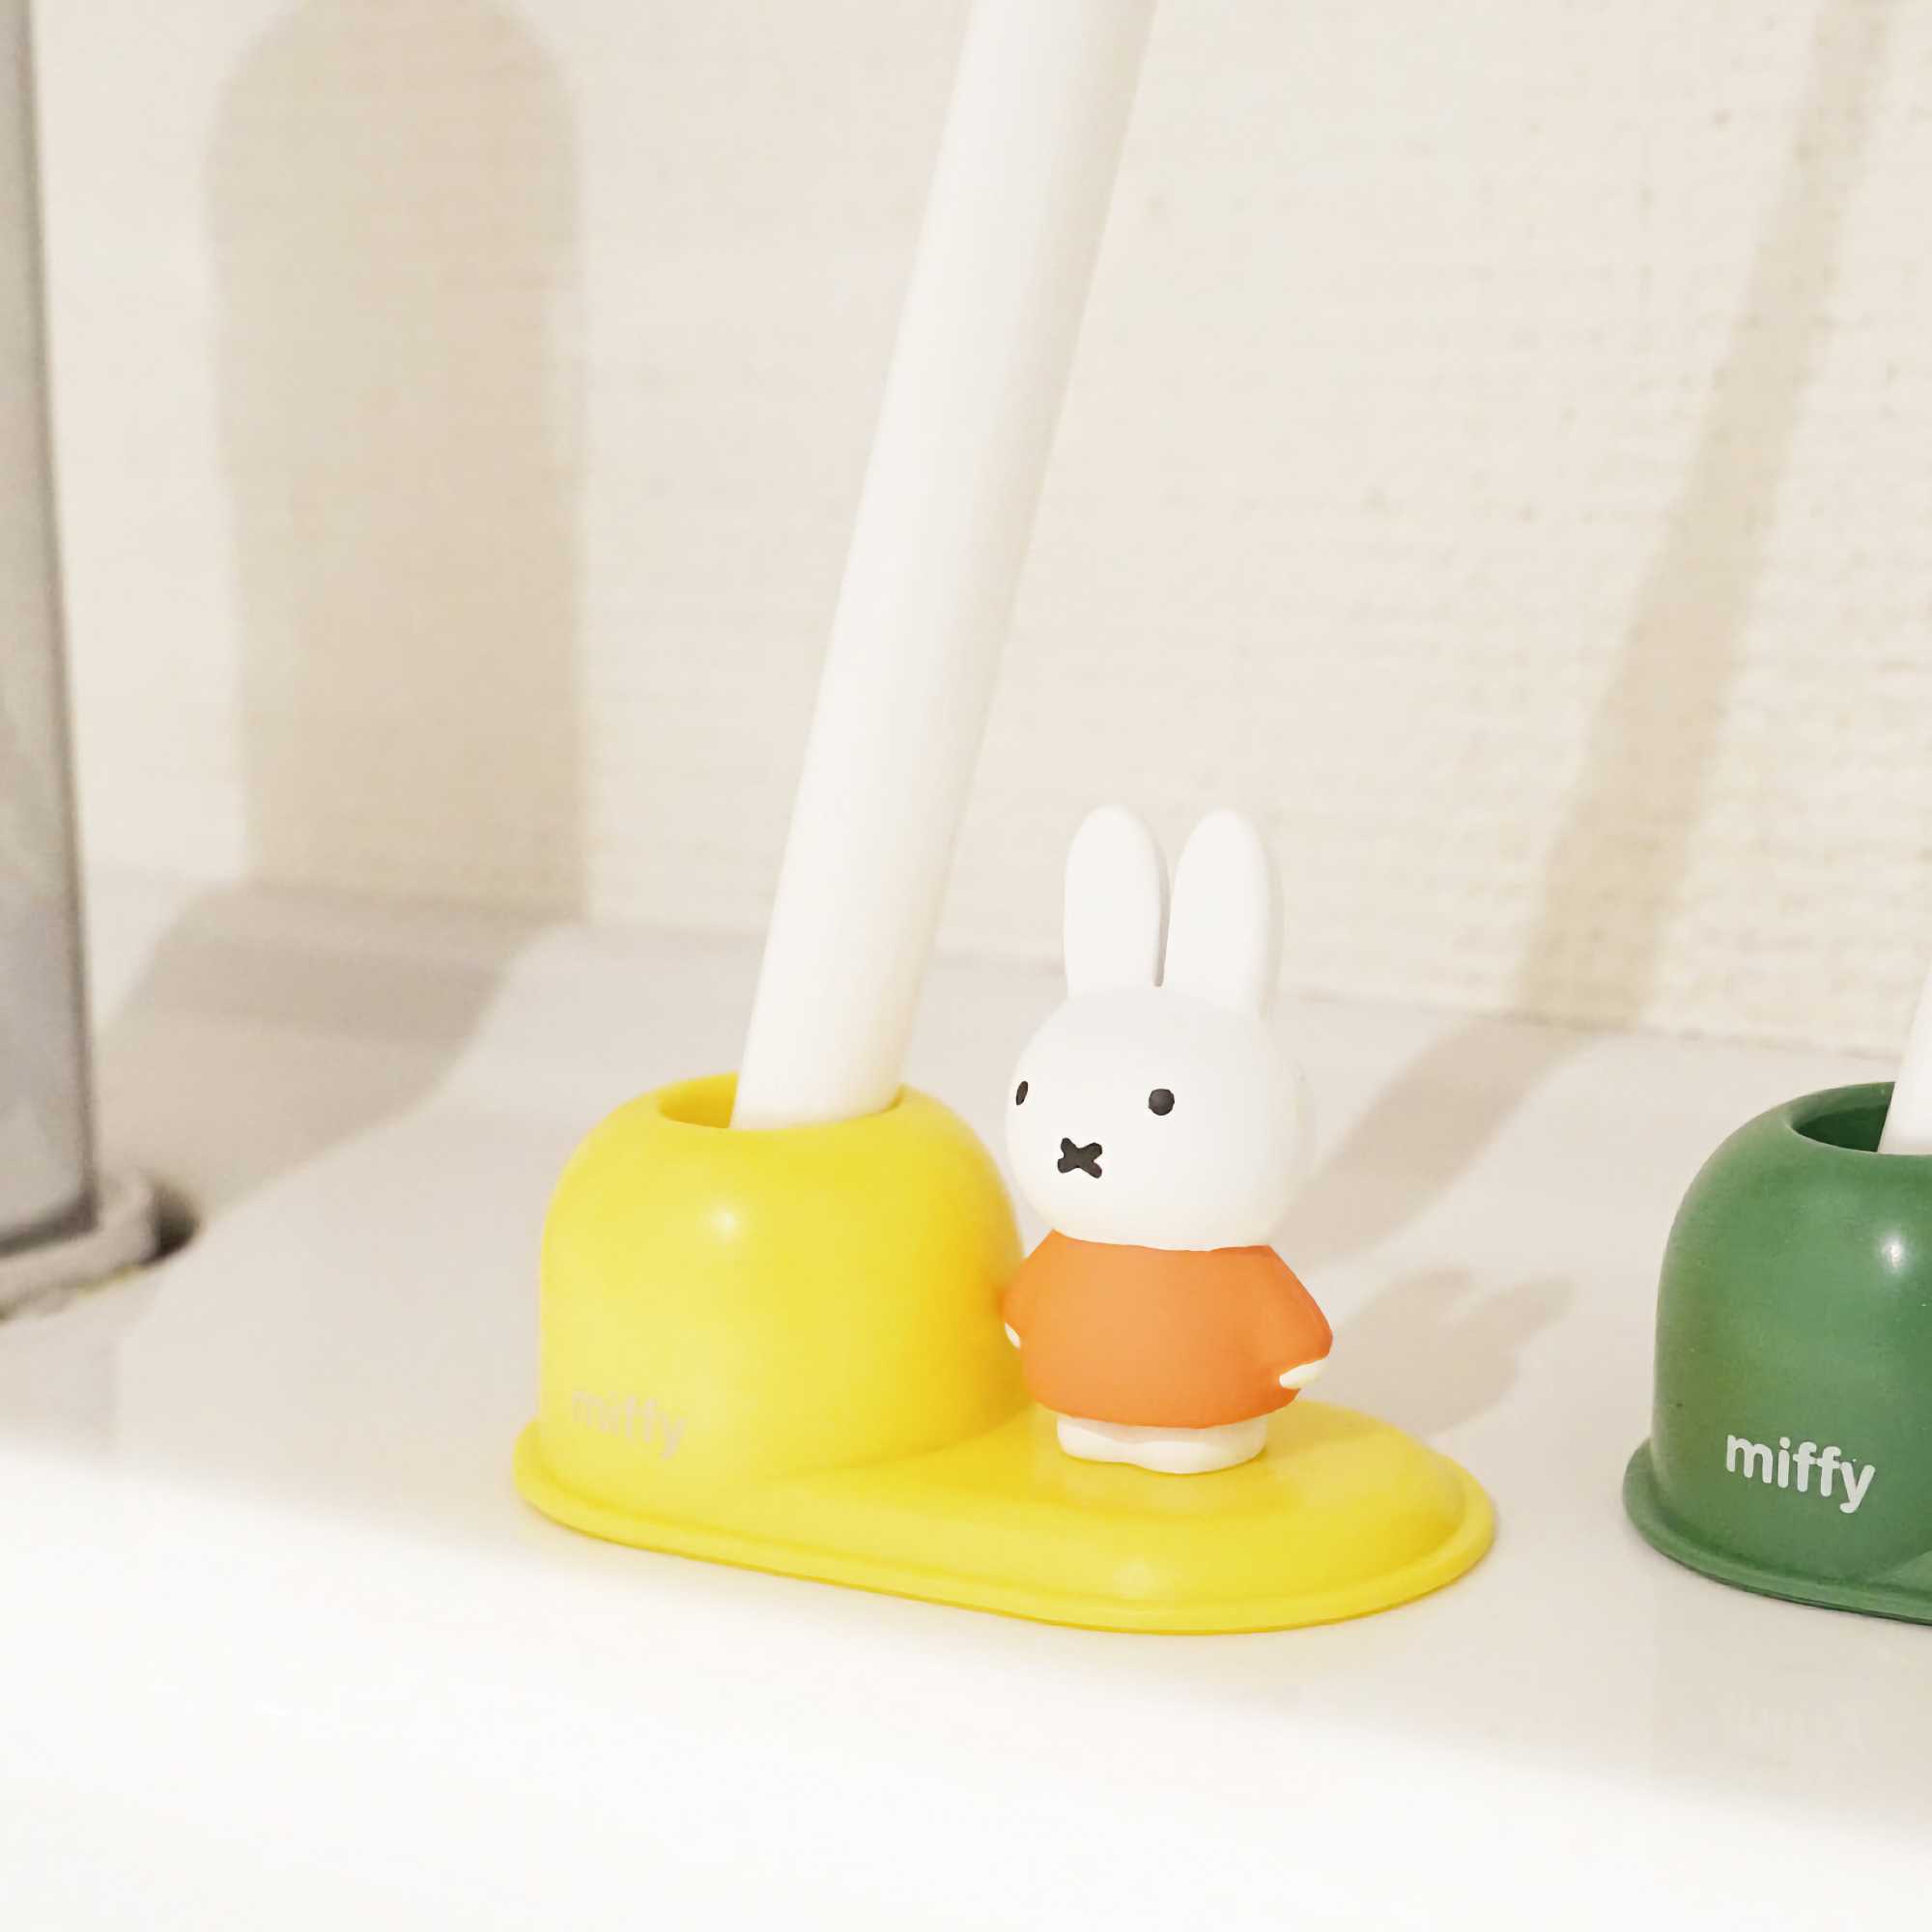 Miffy Toothbrush Stand, Yellow